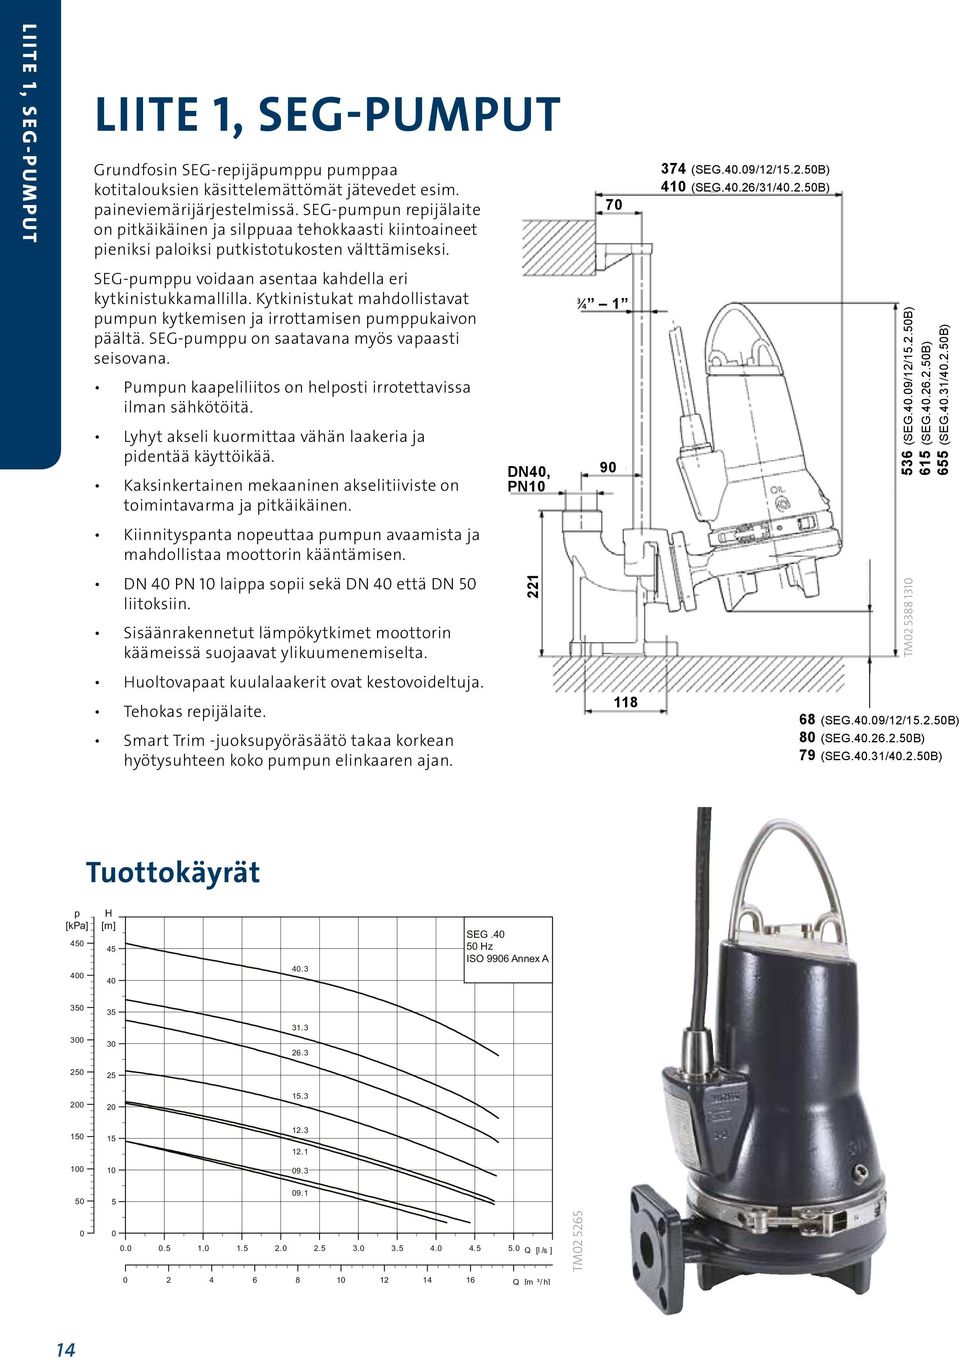 15.2.50B) 410 (SEG.40.26/31/40.2.50B) SEG-pumppu voidaan asentaa kahdella eri kytkinistukkamallilla. Kytkinistukat mahdollistavat pumpun kytkemisen ja irrottamisen pumppukaivon päältä.